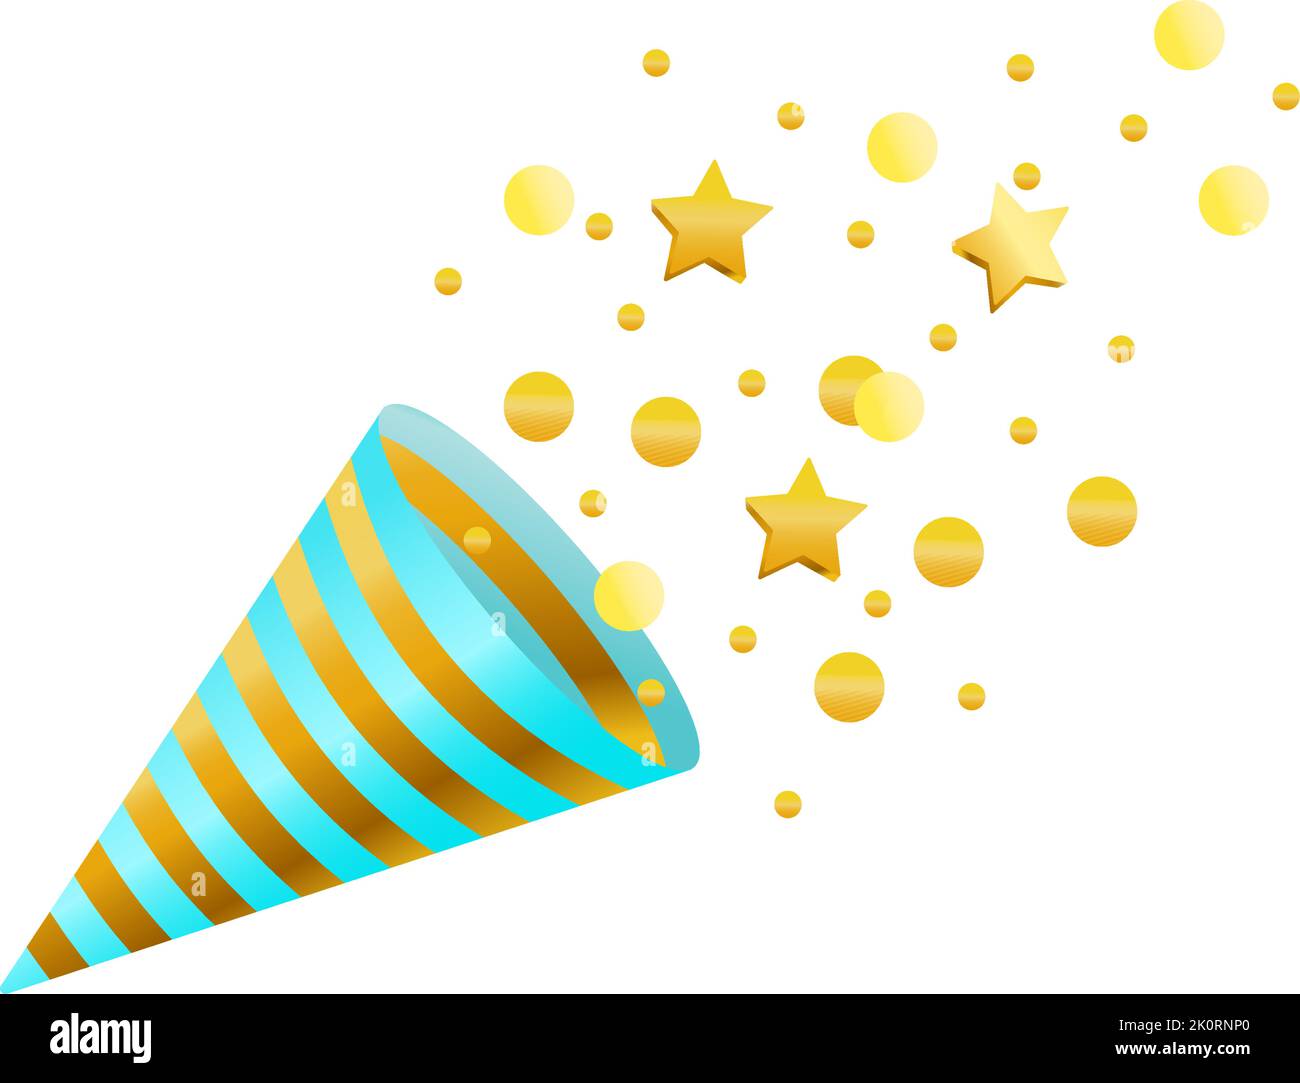 Konfetti, Feuerwerkskörper, Karneval und Papier. Blaue, goldene Farben. Vektorgrafik auf weißem Hintergrund. Cartoon-Stil. Stock Vektor